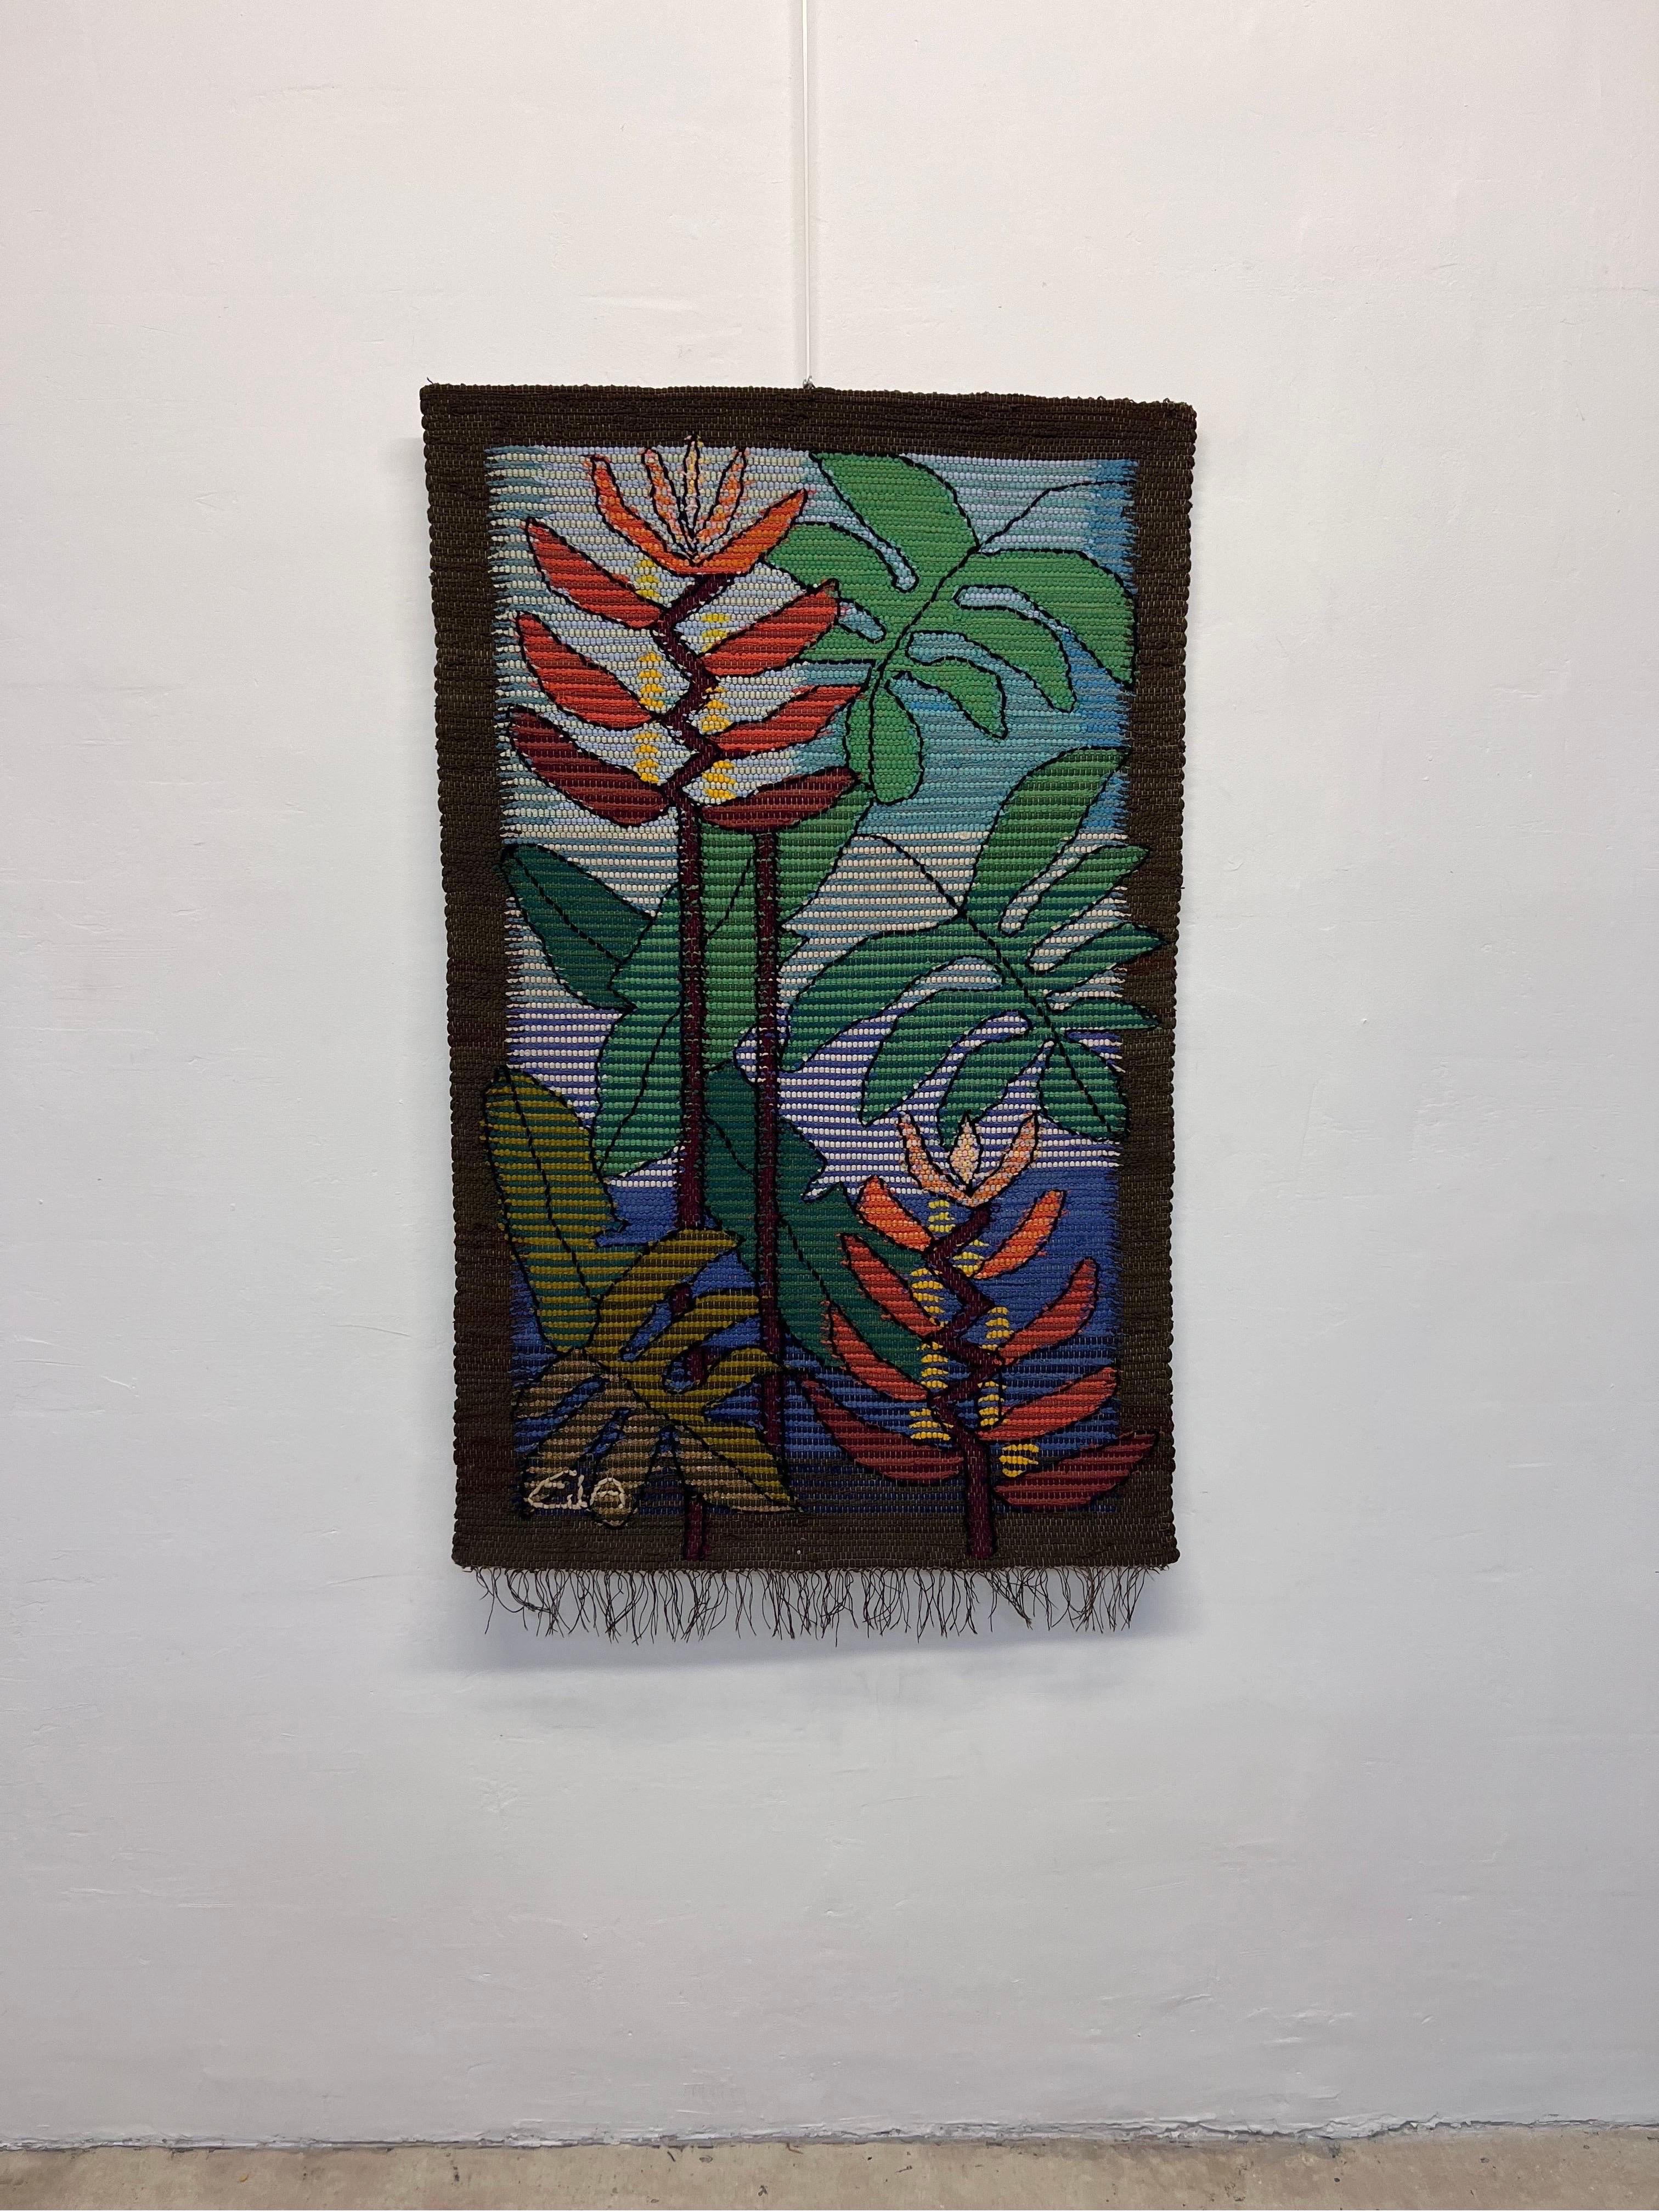 Floraler Wandteppich von Eila Ampula aus Faserkunst, handgefertigt in Brasilien, 1980er Jahre.

Eila Ampula war eine bekannte brasilianische Künstlerin, die sich auf die Gestaltung von Wandteppichen spezialisiert hatte. Ihre Arbeiten wurden in